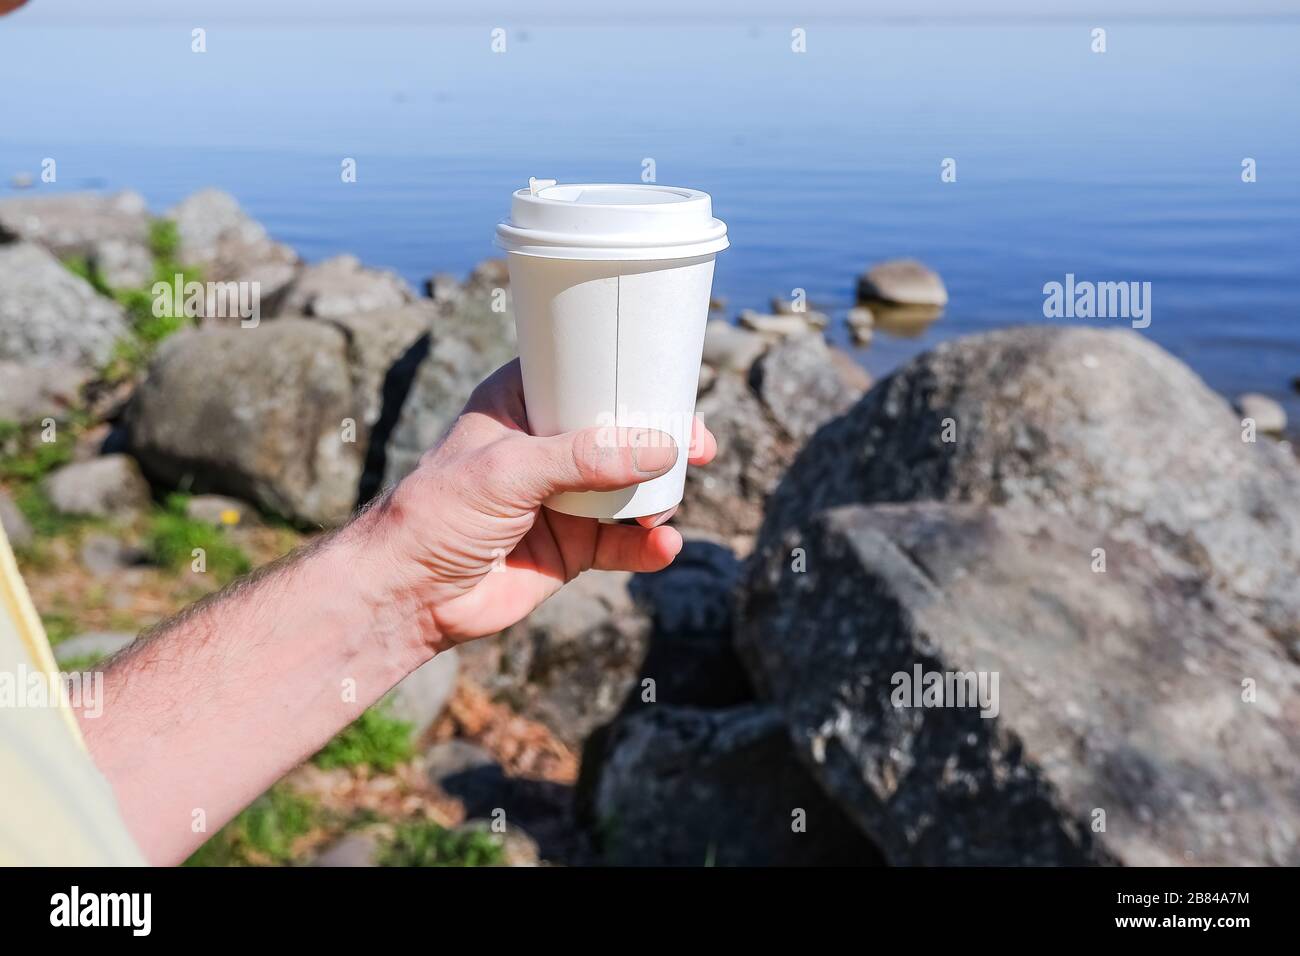 Morgen Papierkaffeetasse mit leckeren heißen Kaffee bei Männern Hand im Freien auf Meeresgrund.Hand hält ein weißes Papppapier Becher für Getränke zum Mitnehmen Stockfoto